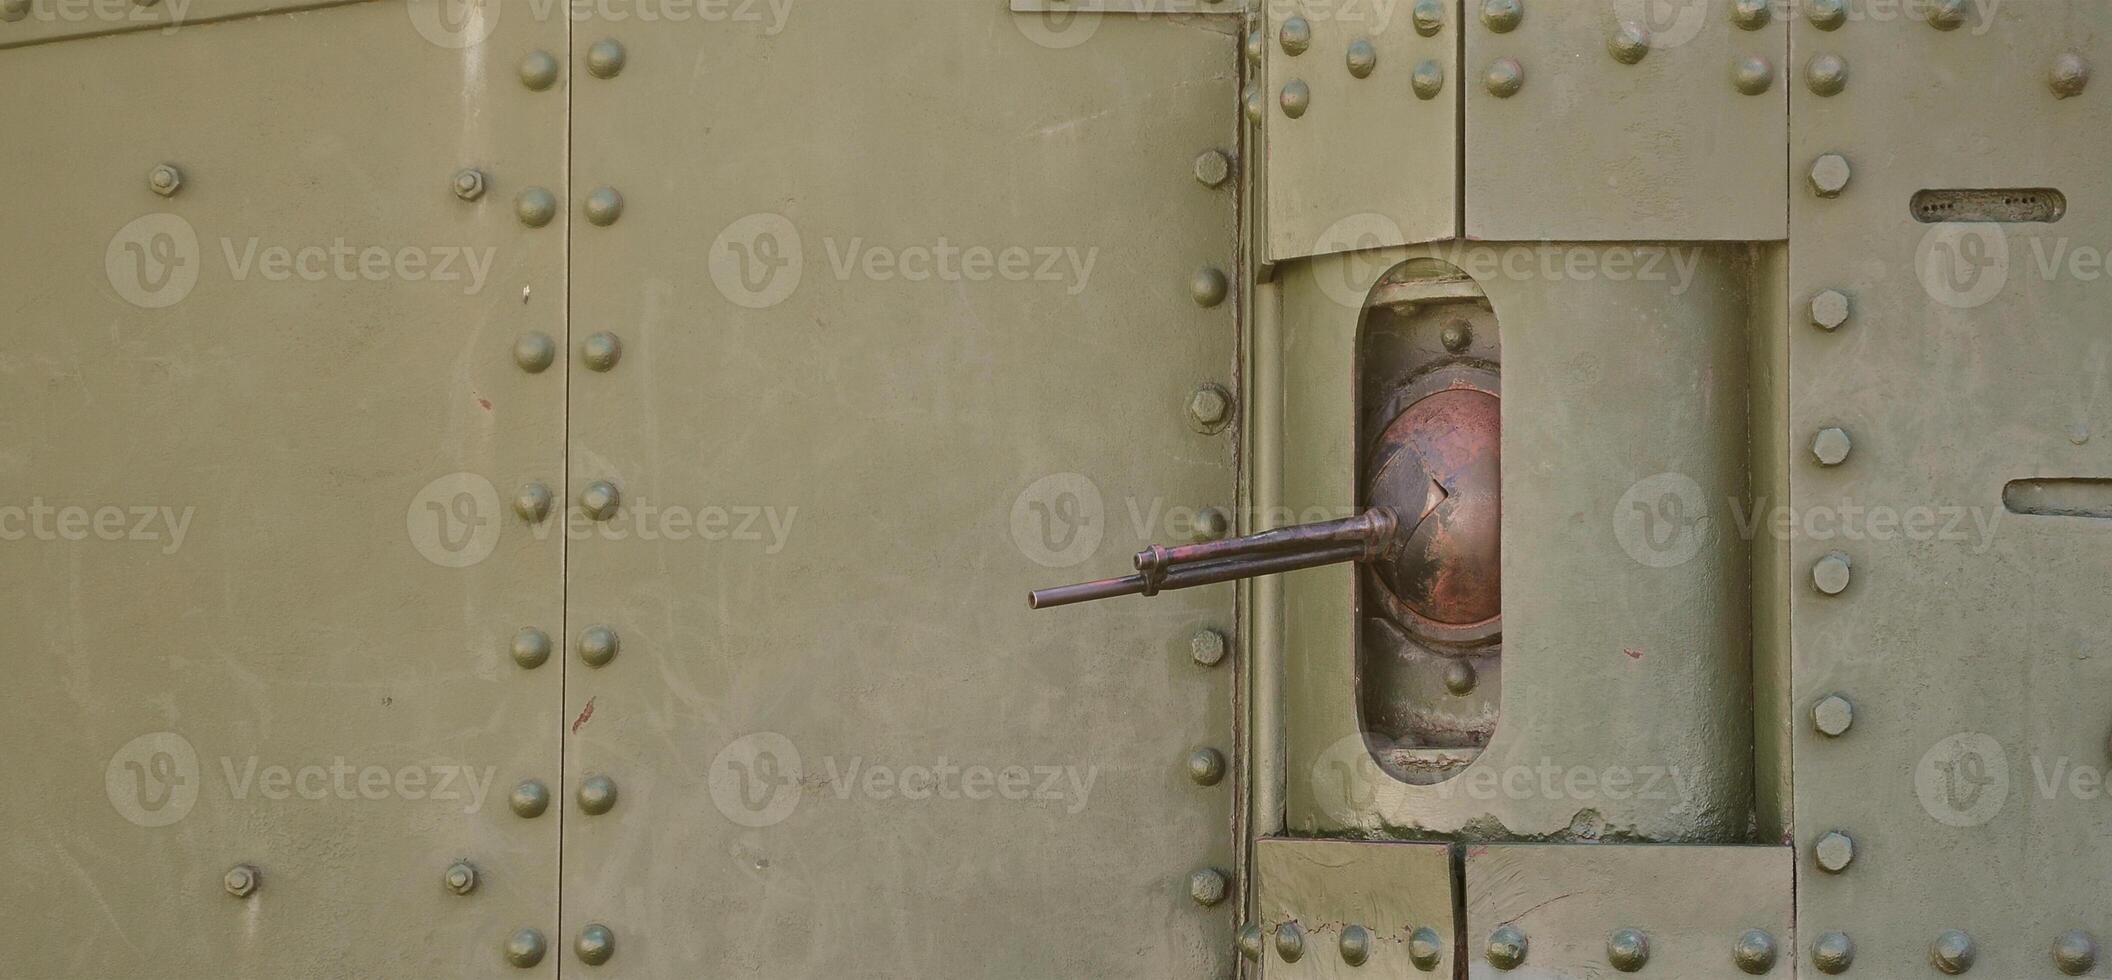 a textura da parede do tanque, feita de metal e reforçada com uma infinidade de parafusos e rebites. imagens da cobertura de um veículo de combate da segunda guerra mundial com uma metralhadora guiada foto